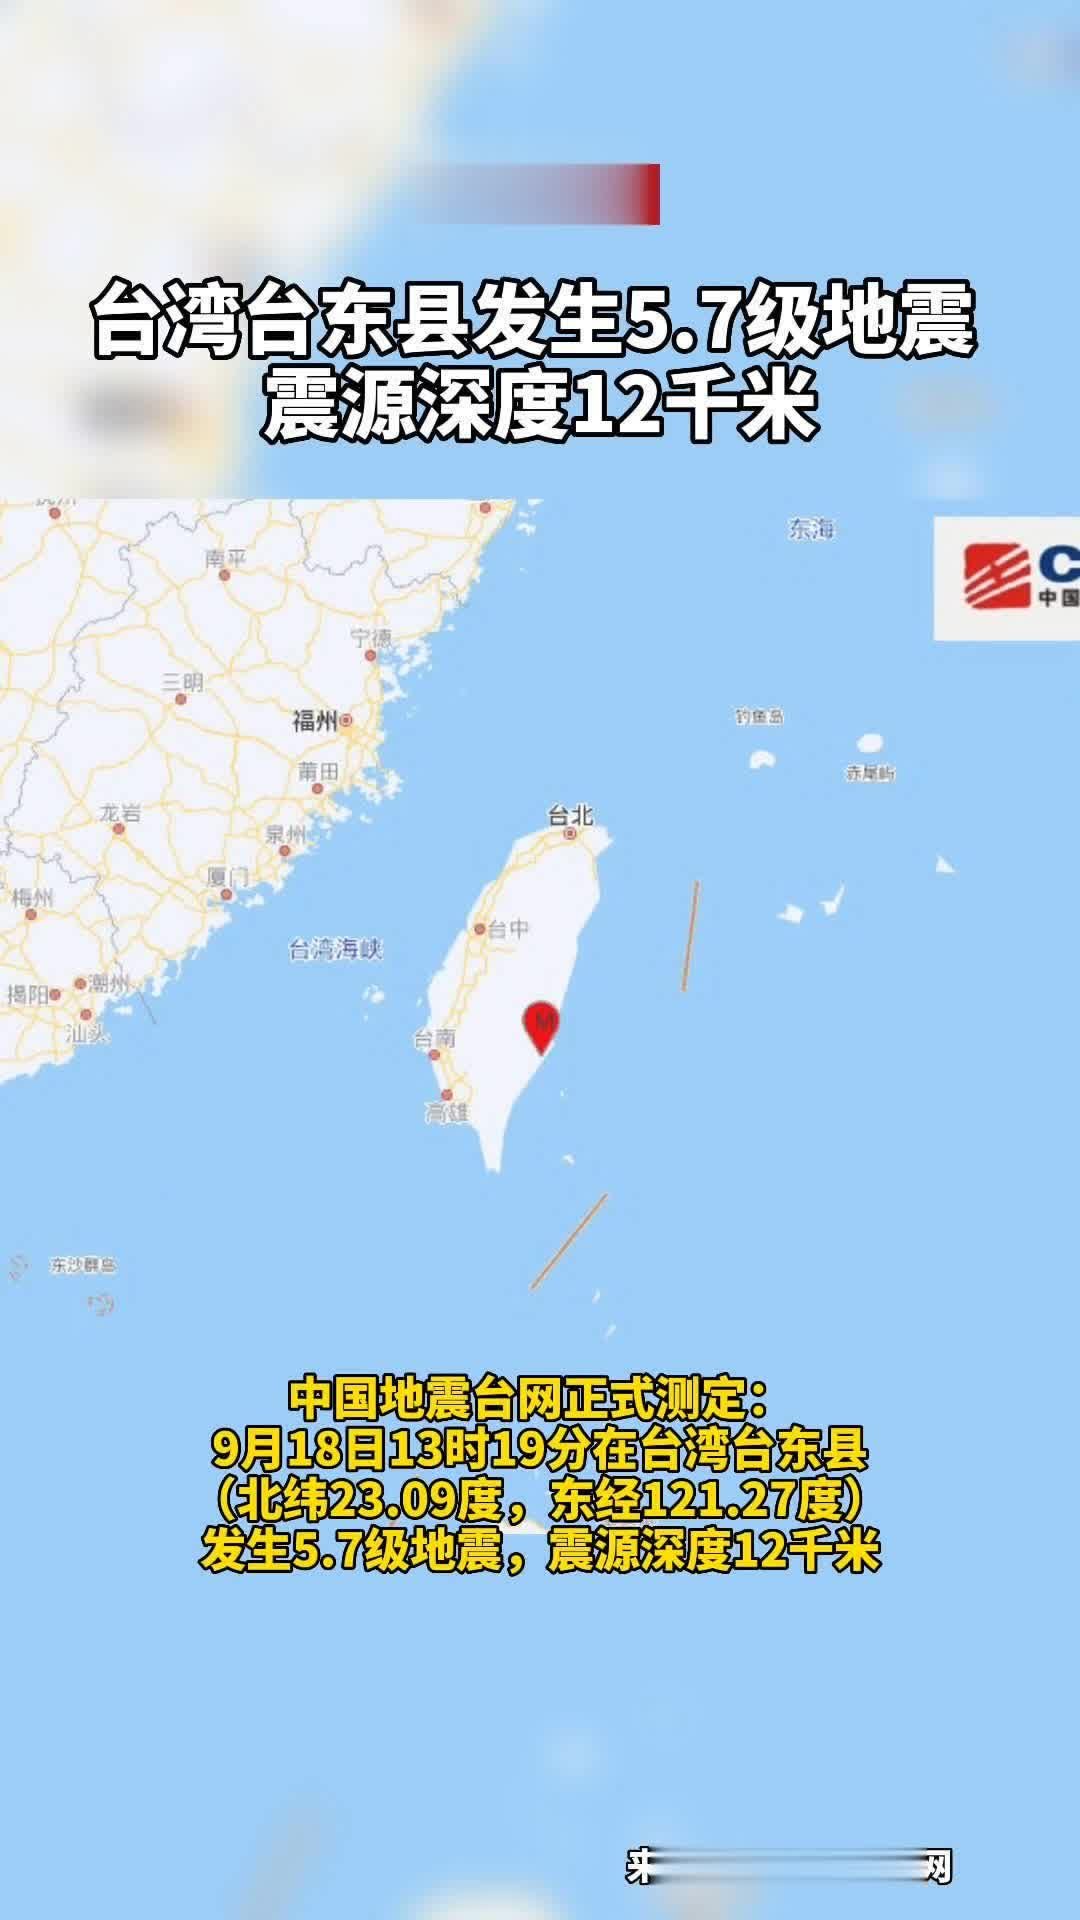 Terremoto atinge Taiwan; veja fotos - fotos em Mundo - g1